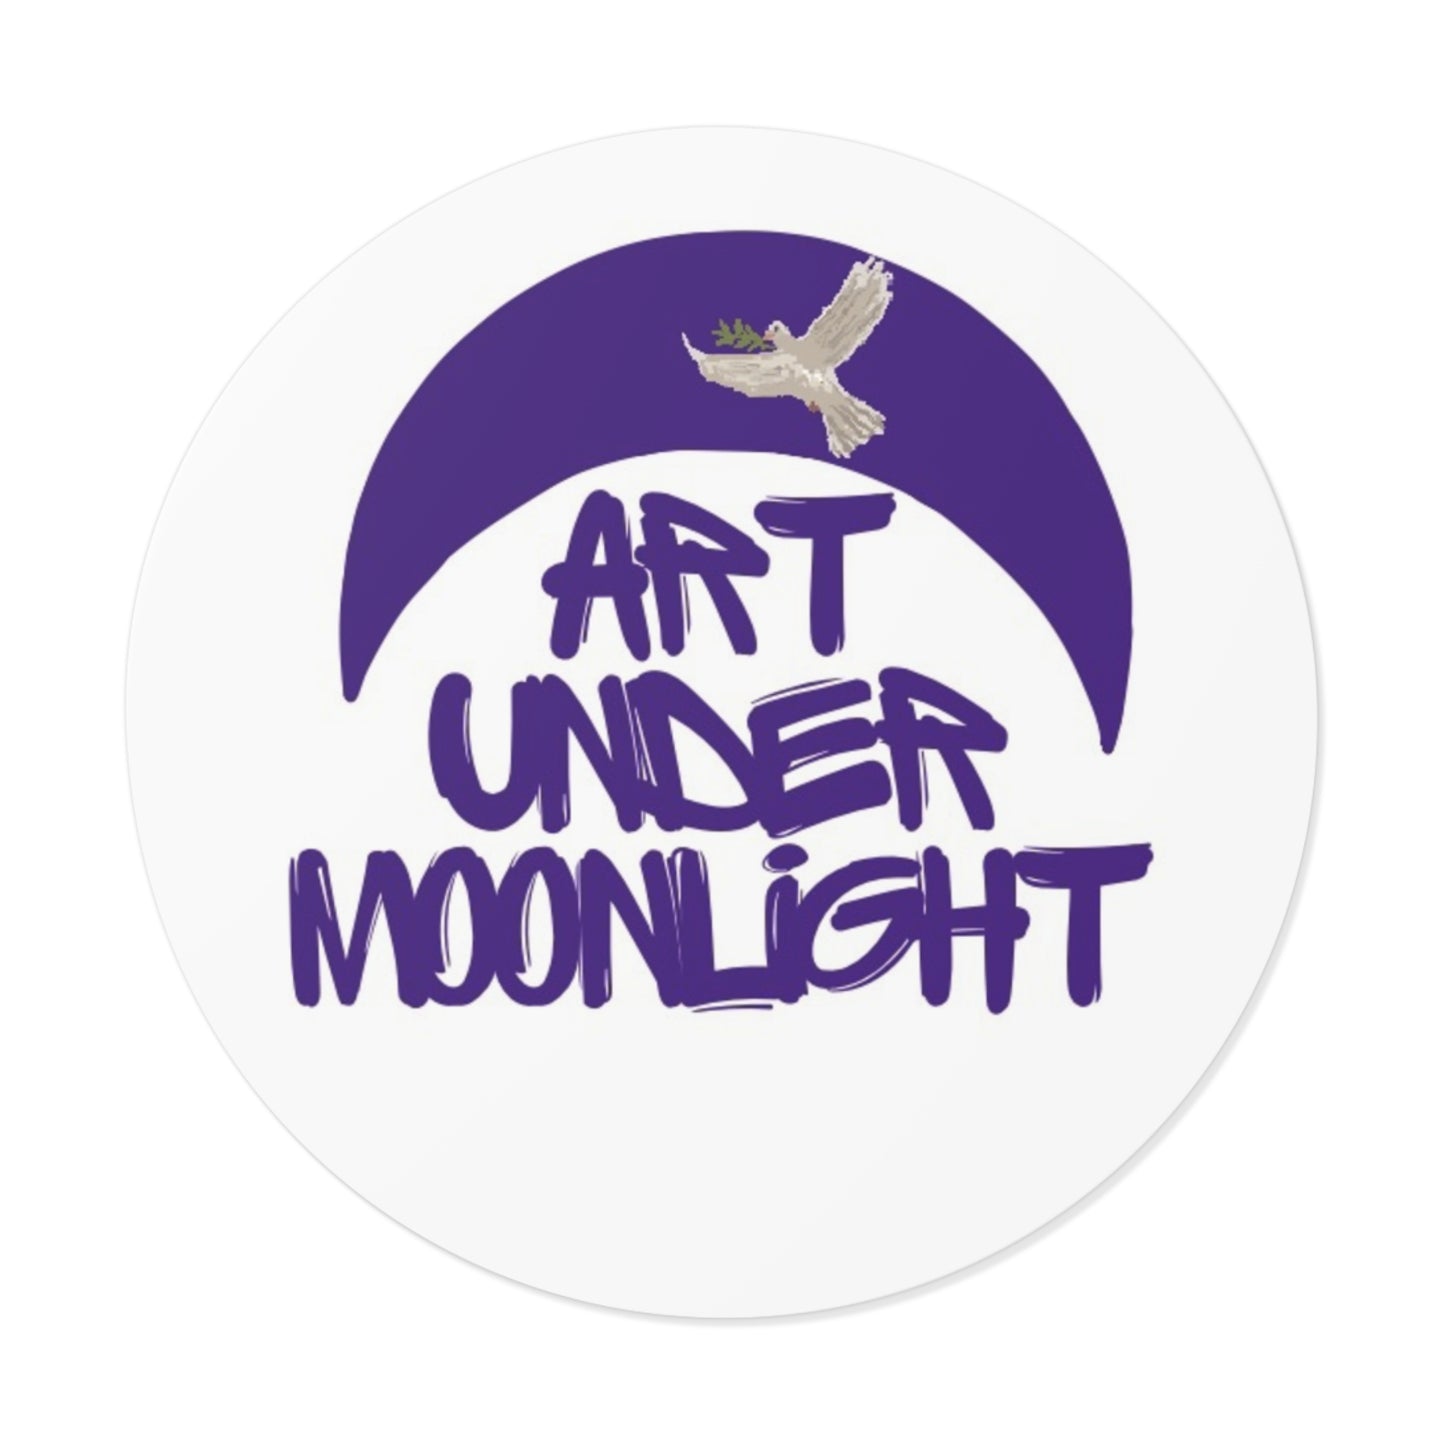 Round Vinyl Brand Stickers - art under moonlight